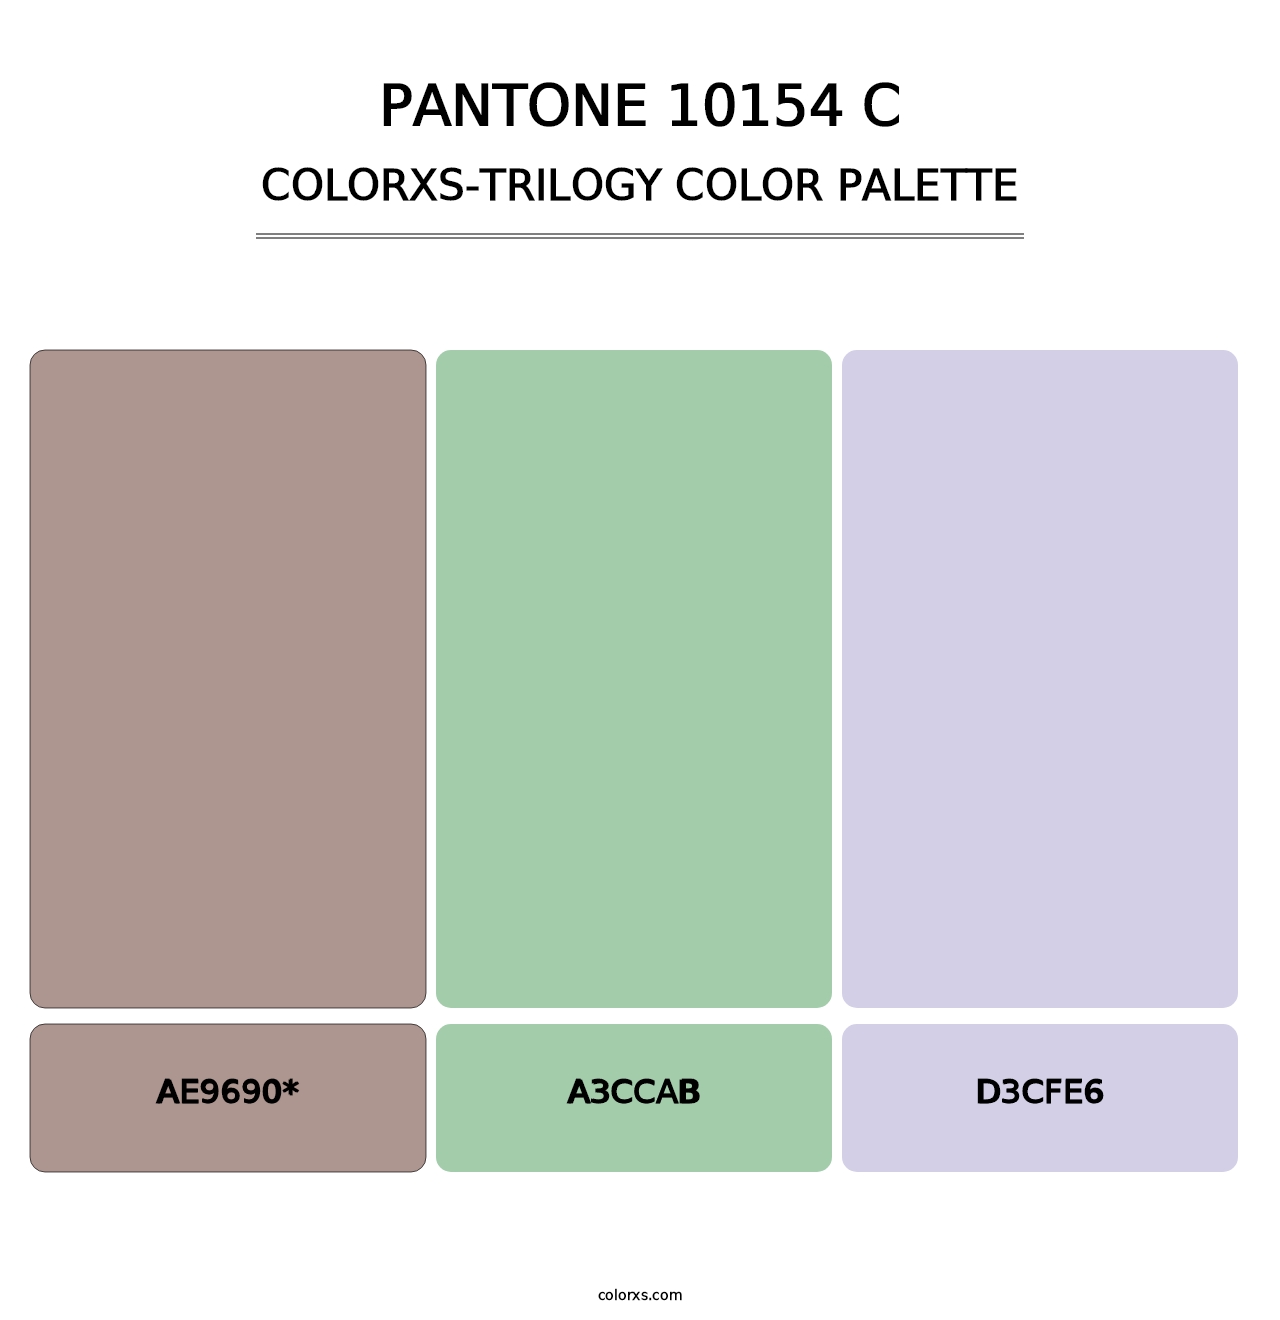 PANTONE 10154 C - Colorxs Trilogy Palette